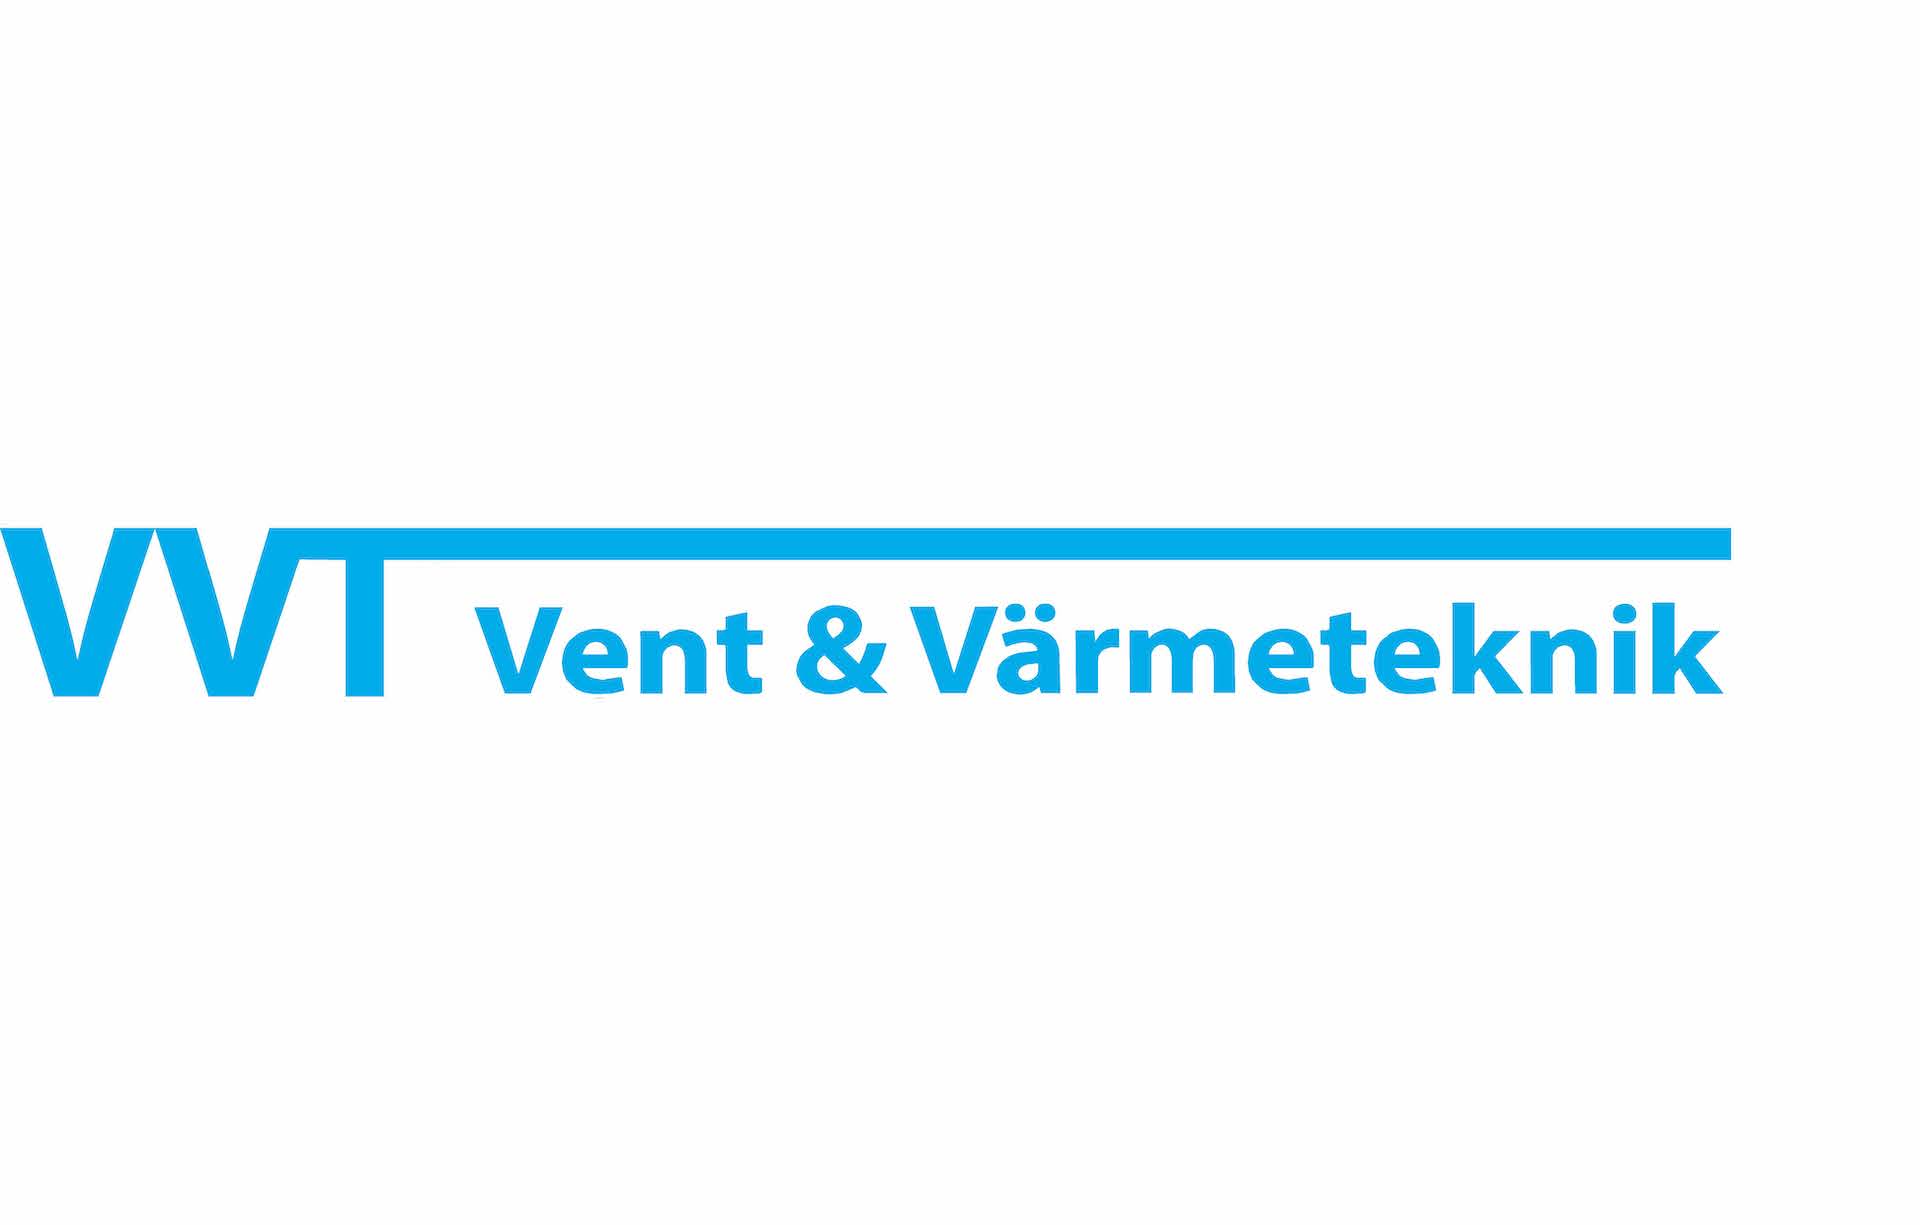 VVT Vent & Värmeteknik